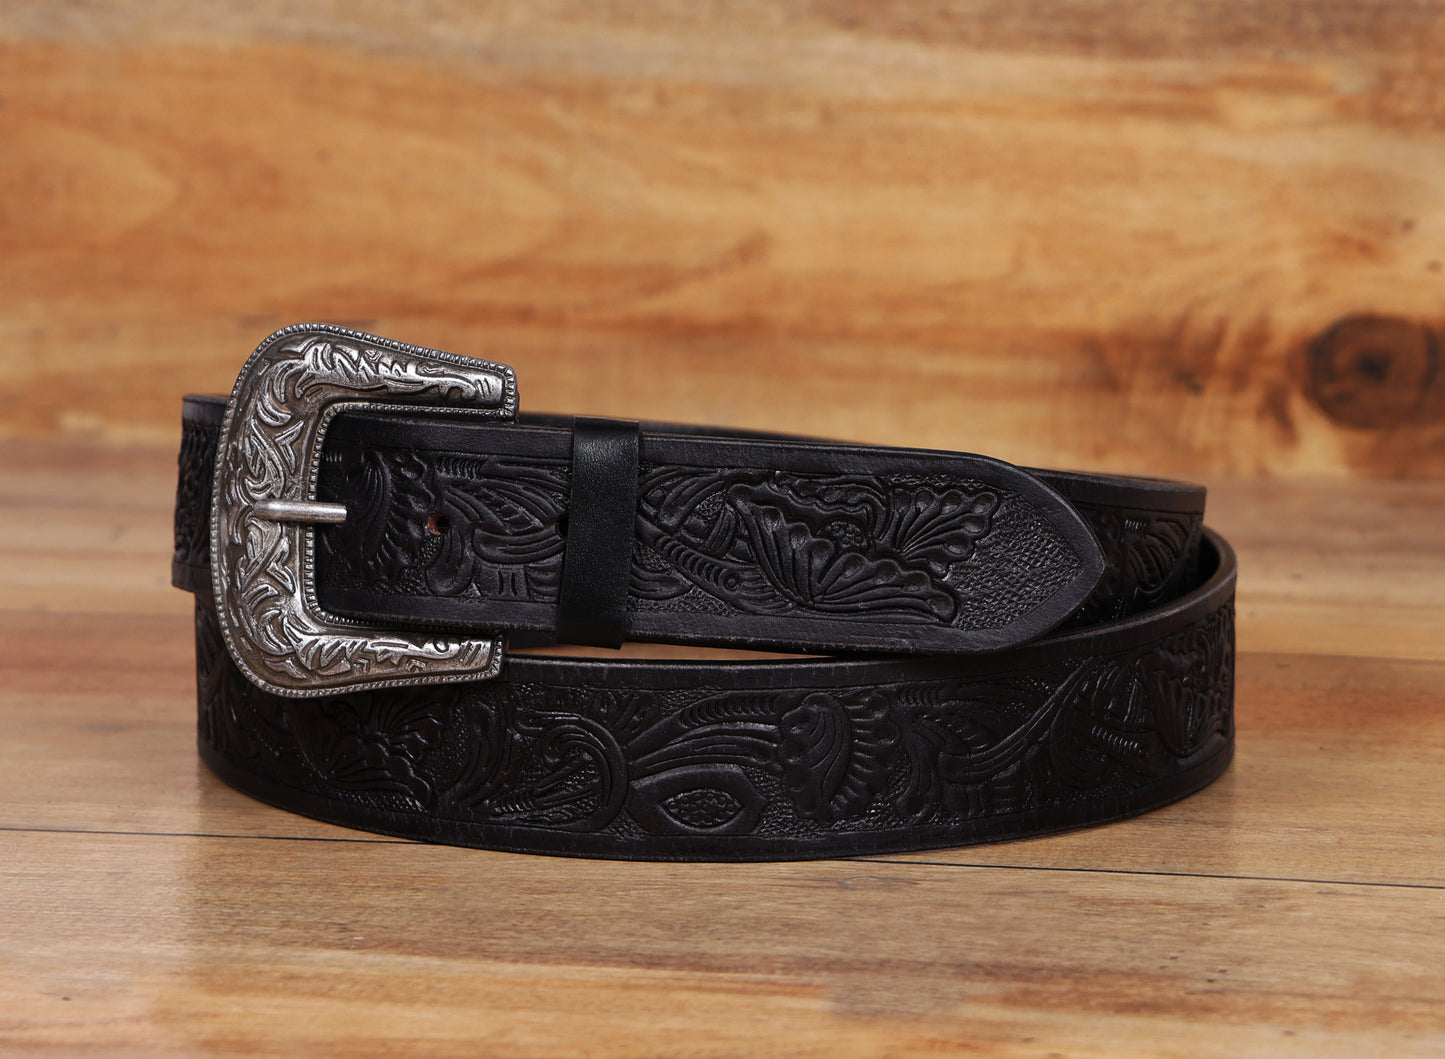 "Sophisticated Craftsmanship: Hand-Carved Black Leather Belts" Art: LB-815